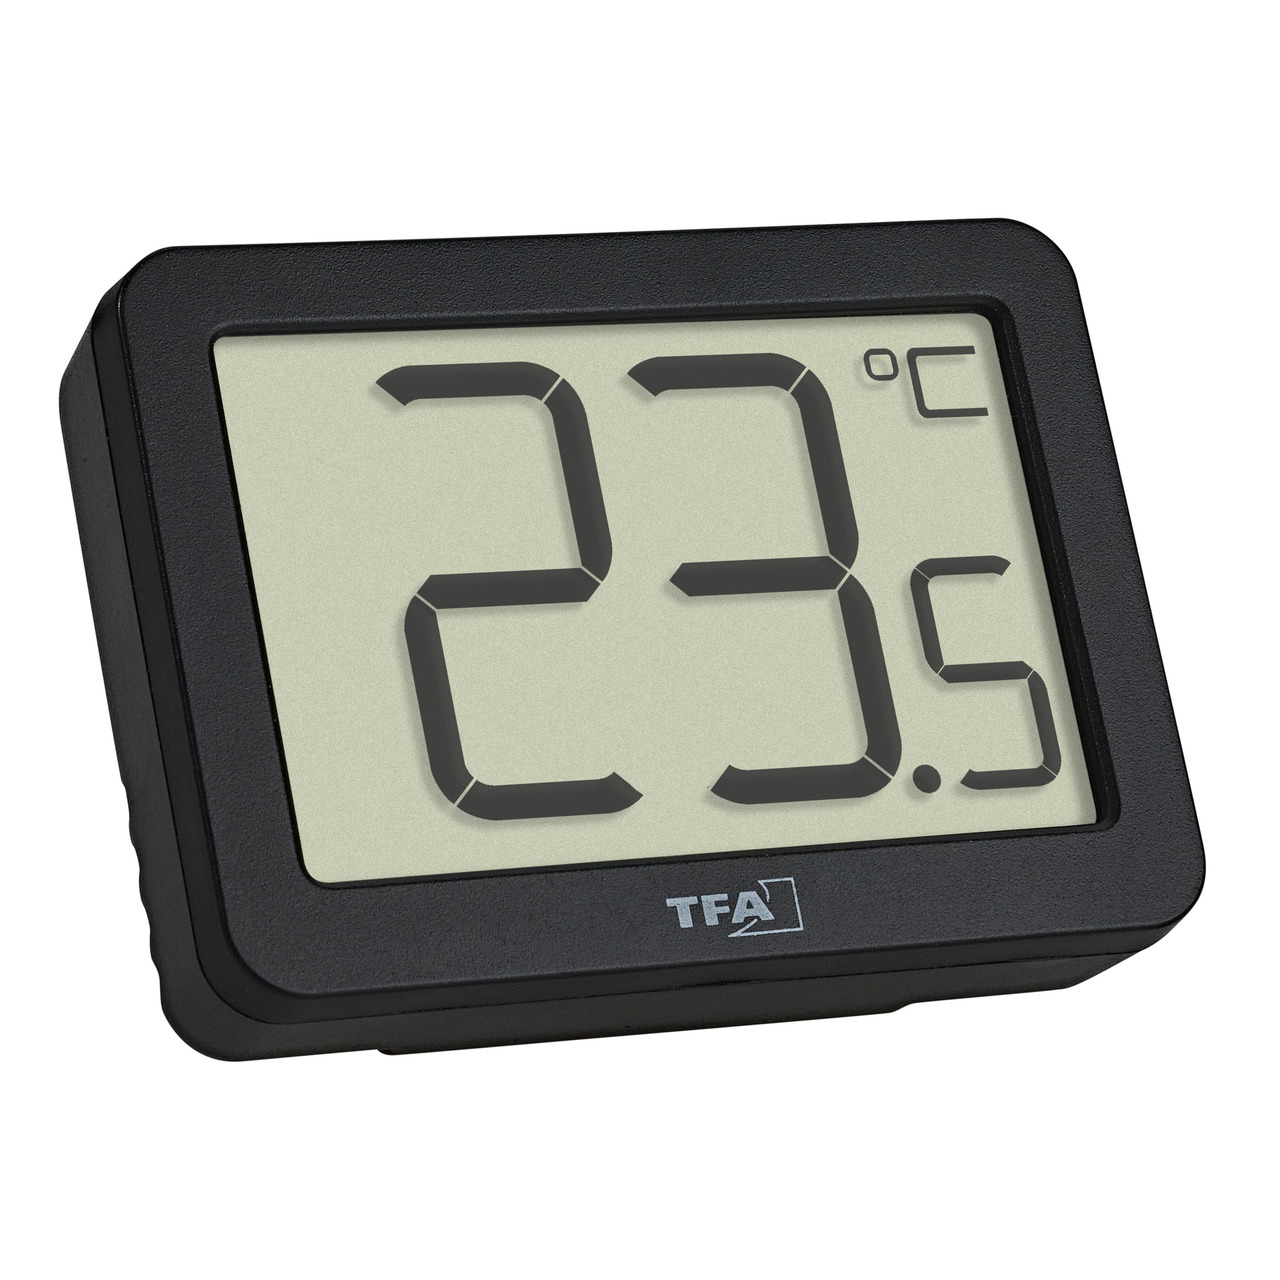 TFA Digitales Thermometer für Raumtemperatur-Erfassung- Magnetmontage- kompakt- schwarz